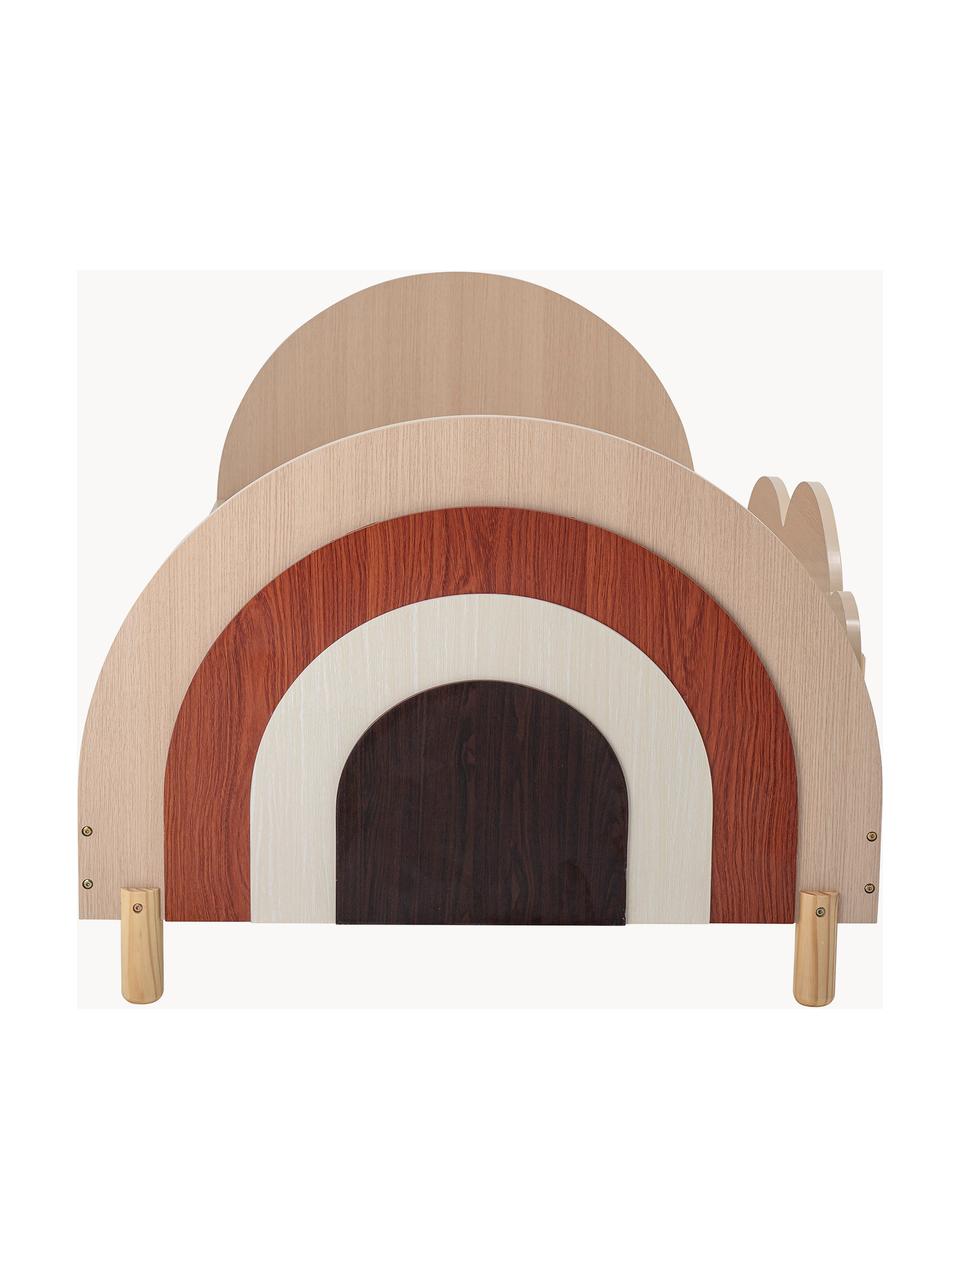 Dětská postel s odnímatelnou boční opěrkou Charli, 90 x 200 cm, Překližka, dřevovláknitá deska střední hustoty (MDF), Dřevo, více barev, Š 90 cm, D 200 cm